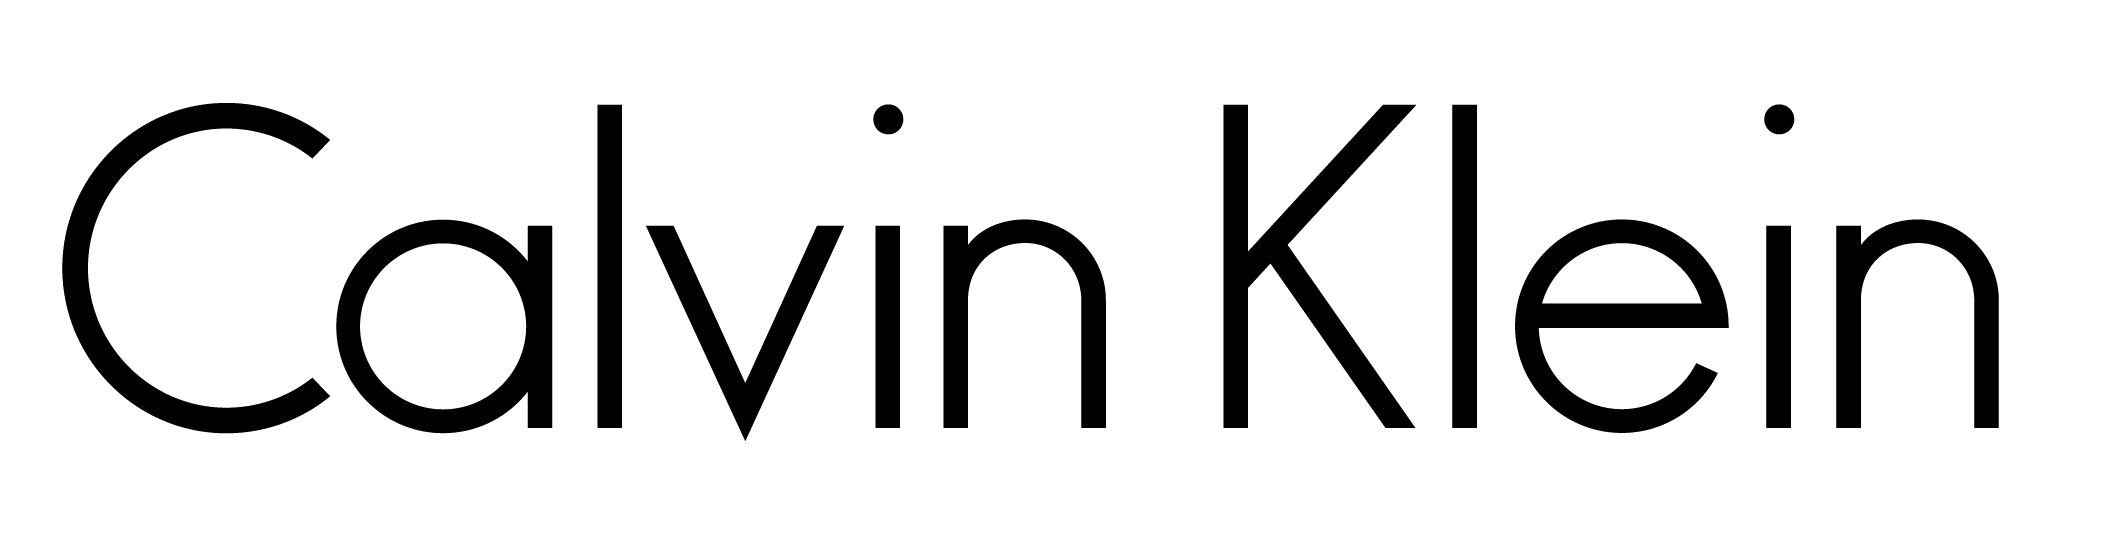 カルバン・クラインのロゴ